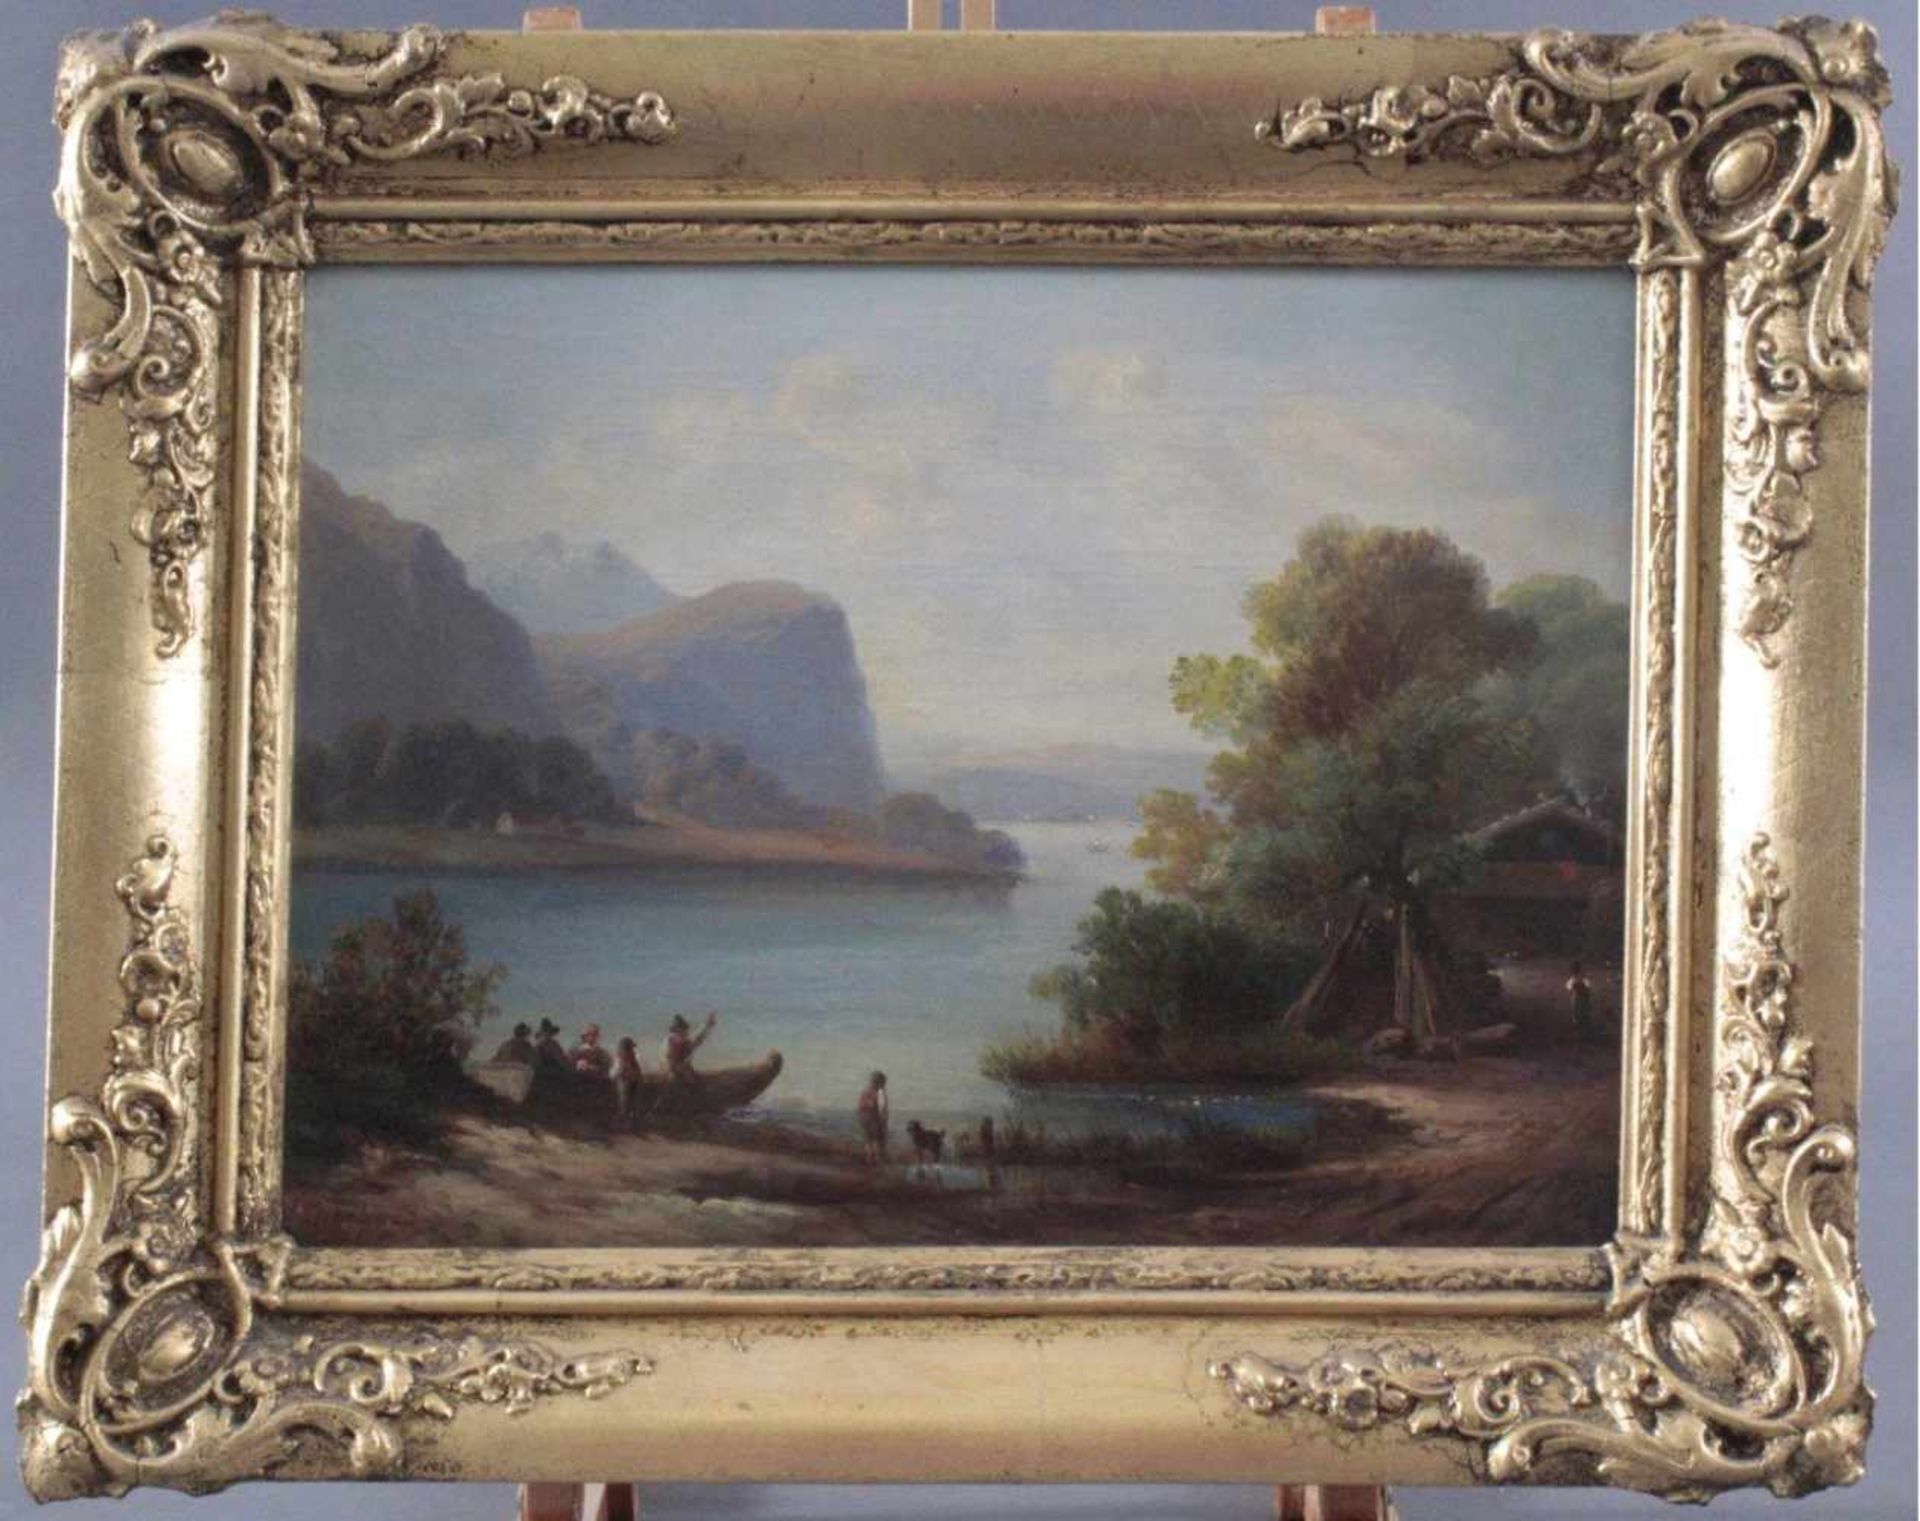 I. Engelmann (deutscher Maler des 19. Jahrhunderts). "Seelandschaft mit Personen"Öl auf Leinwand,